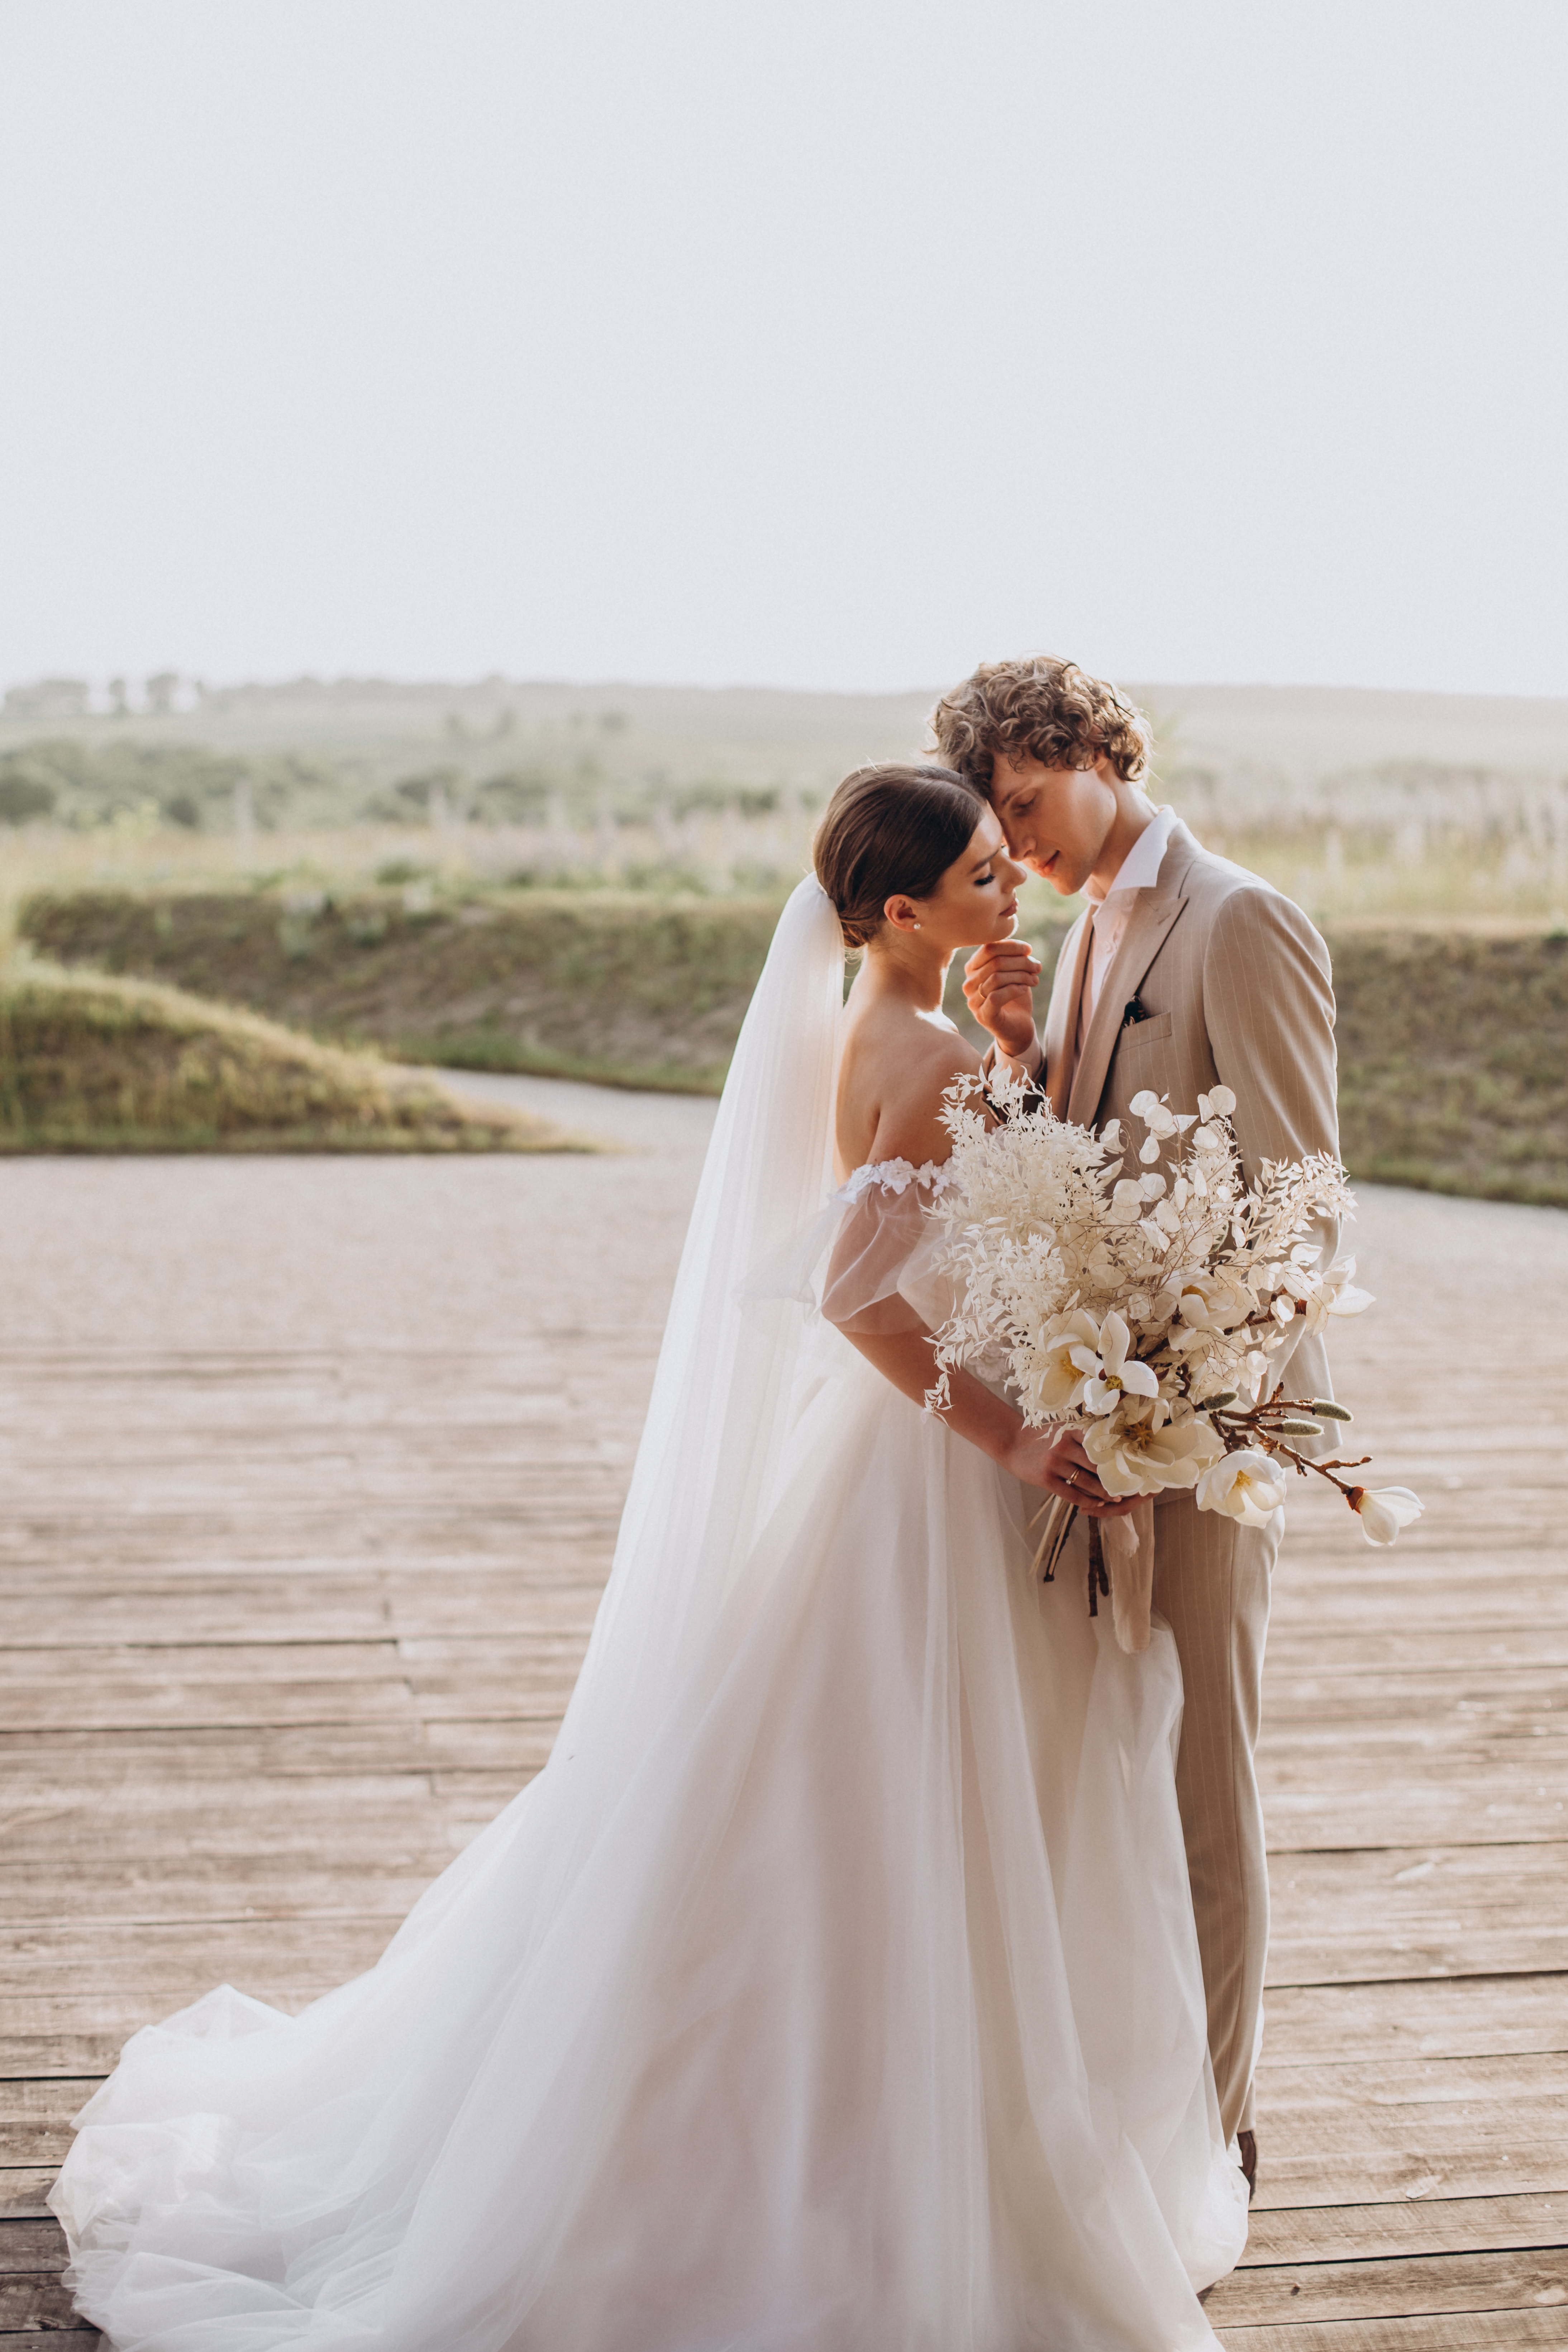 Un couple à leur mariage | Source : Shutterstock